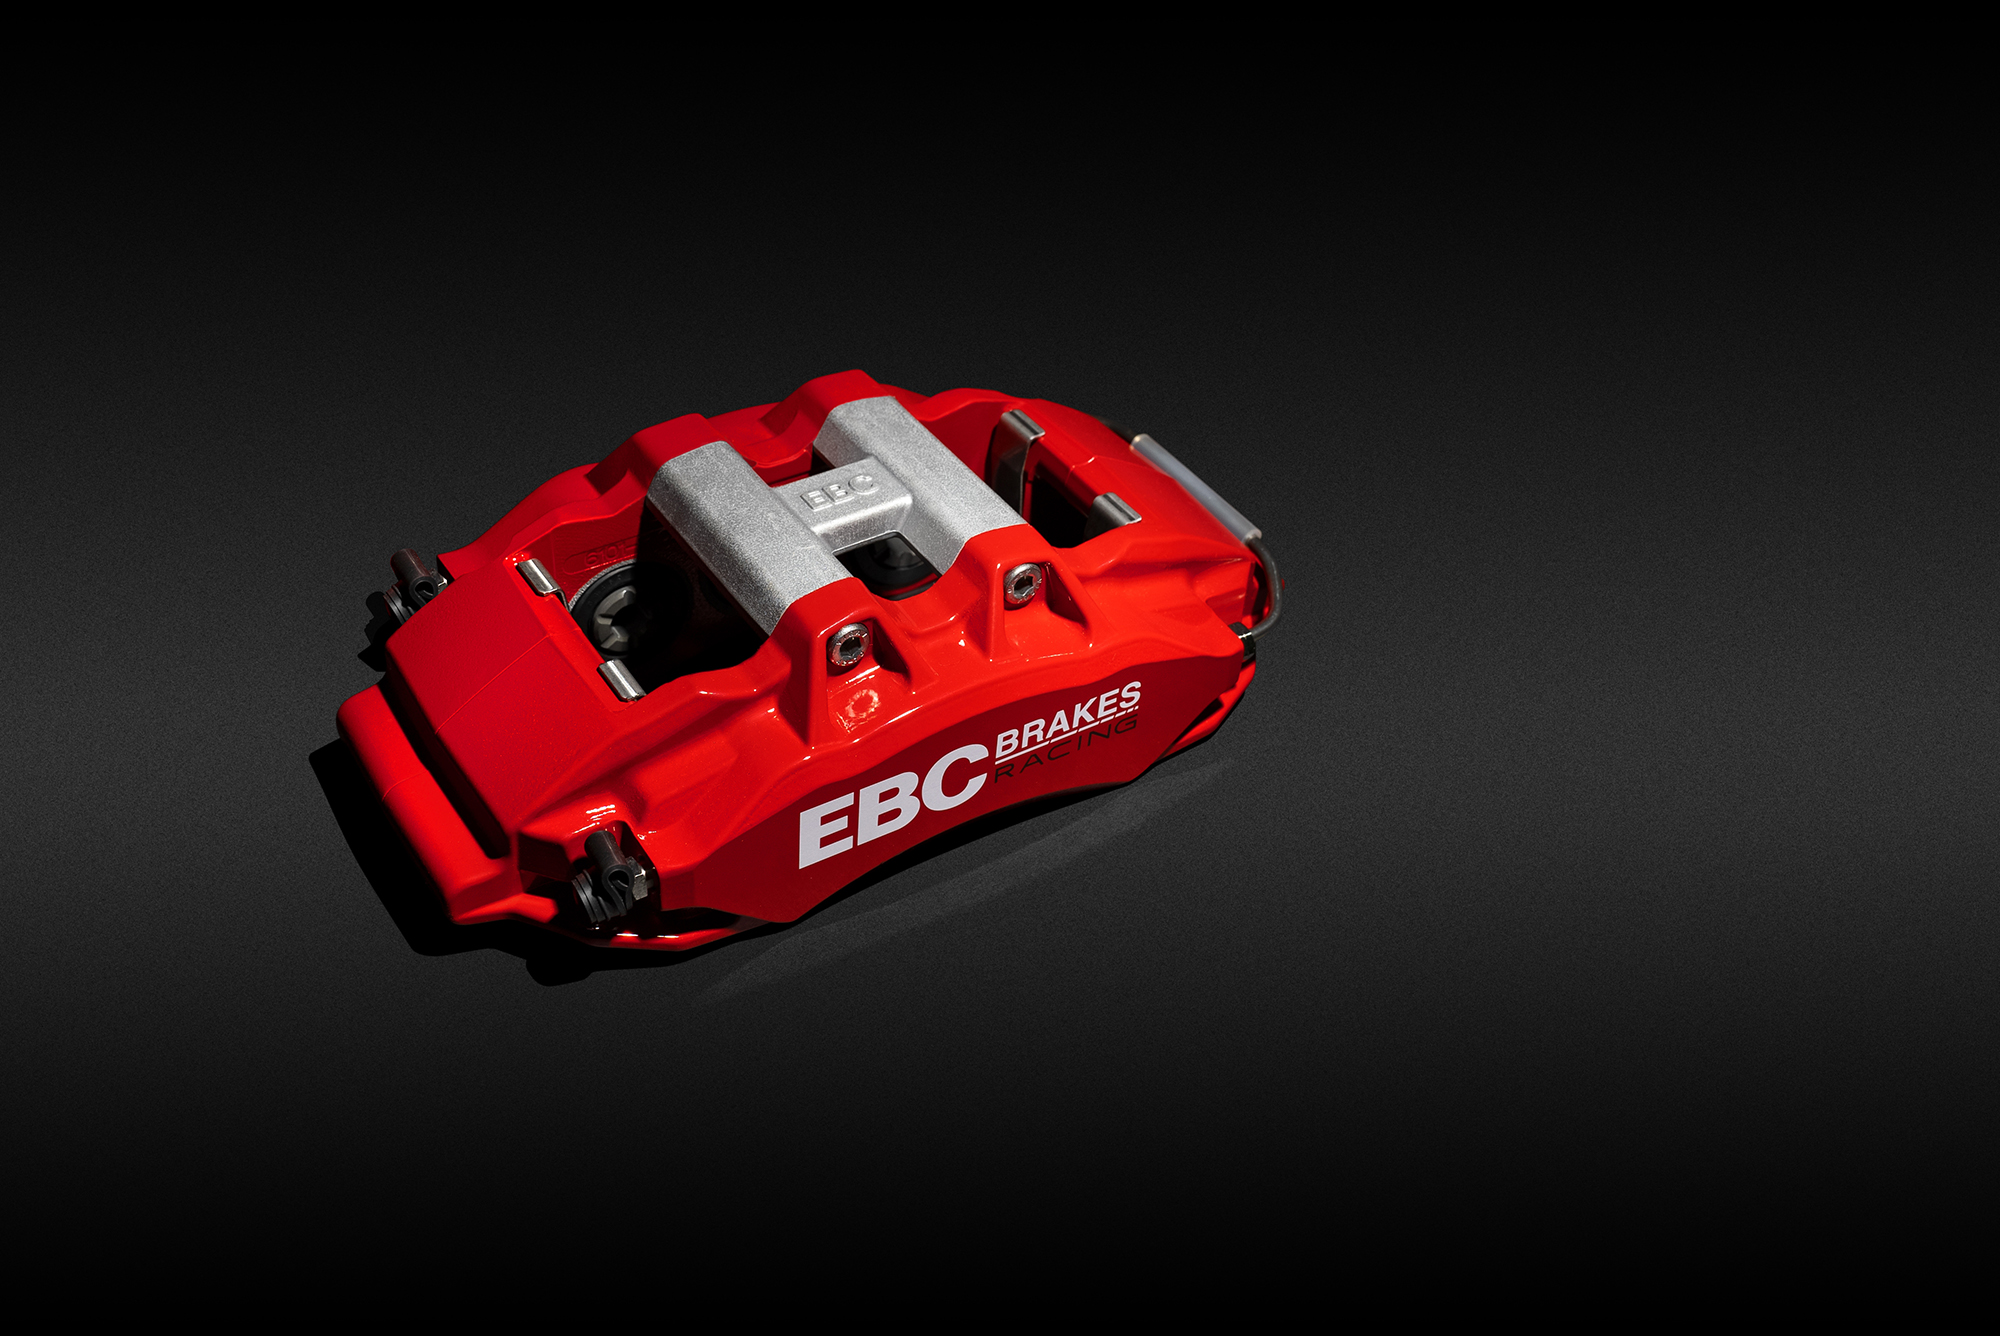 EBC Apollo Big Brake Kit – Seat